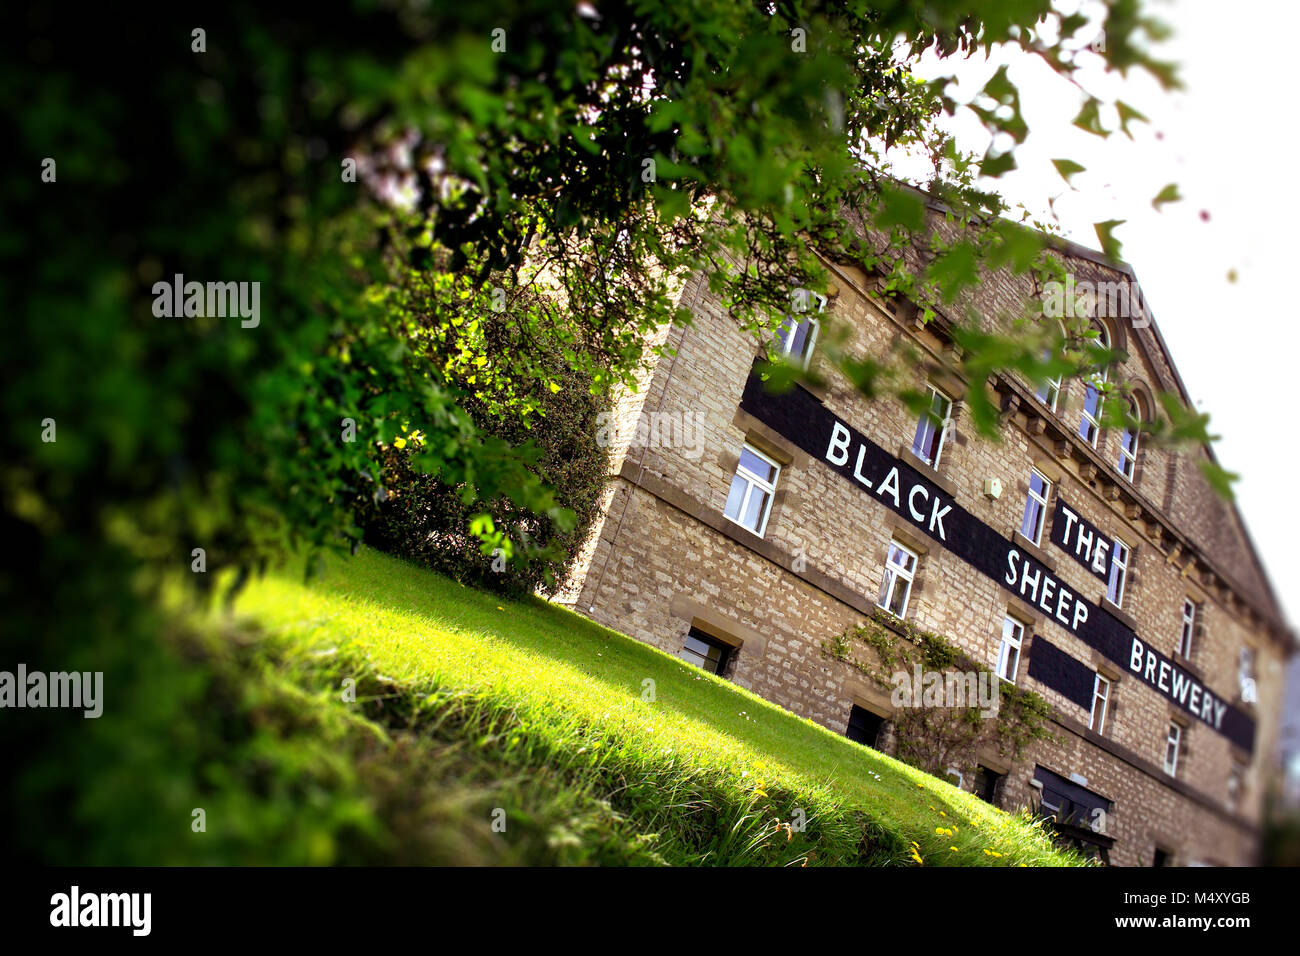 The Black Sheep Brewery, Masham, North Yorkshire Stock Photo